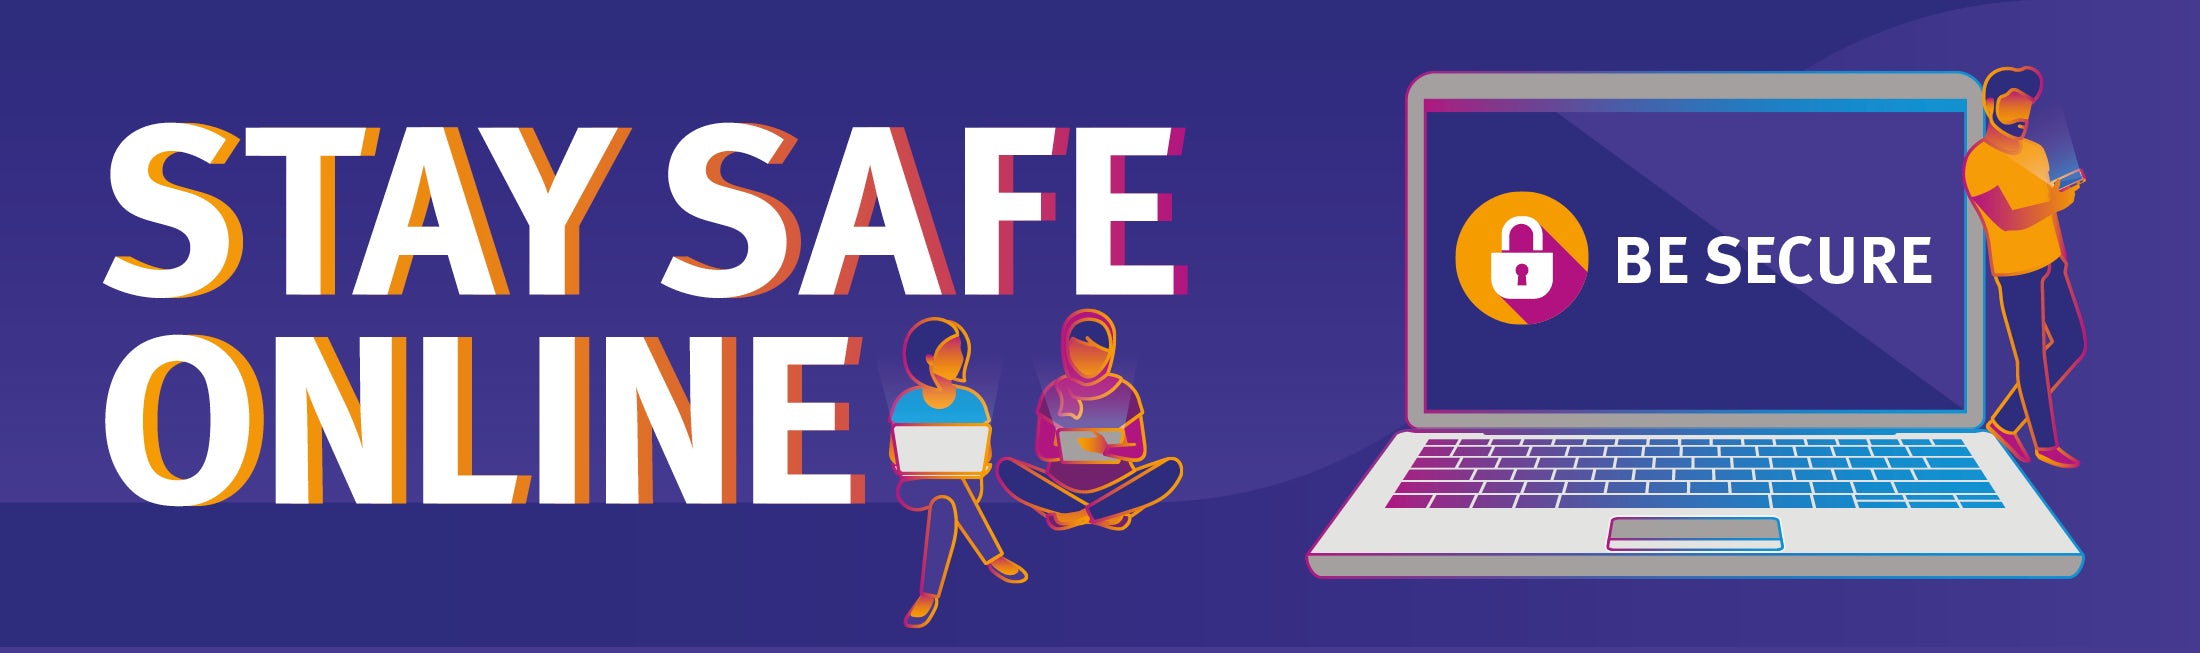 Stay safe online banner